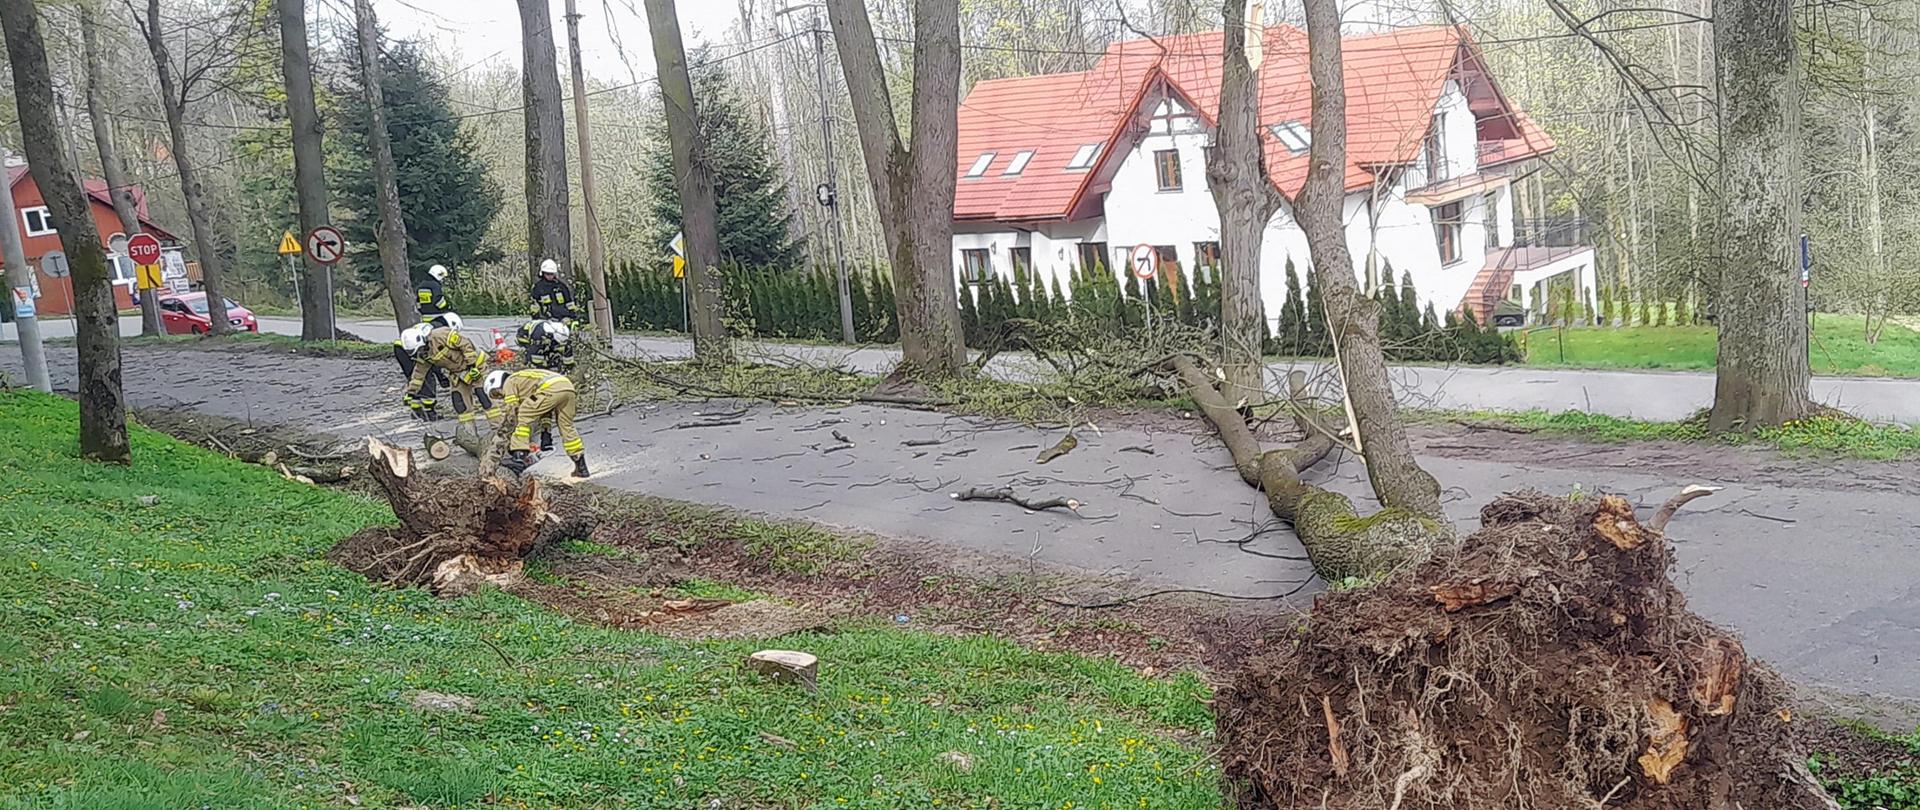 Po prawej stronie drzewo zwalone na drogę. Na drugim planie po lewej stronie strażacy usuwający fragmenty drzew z drogi.